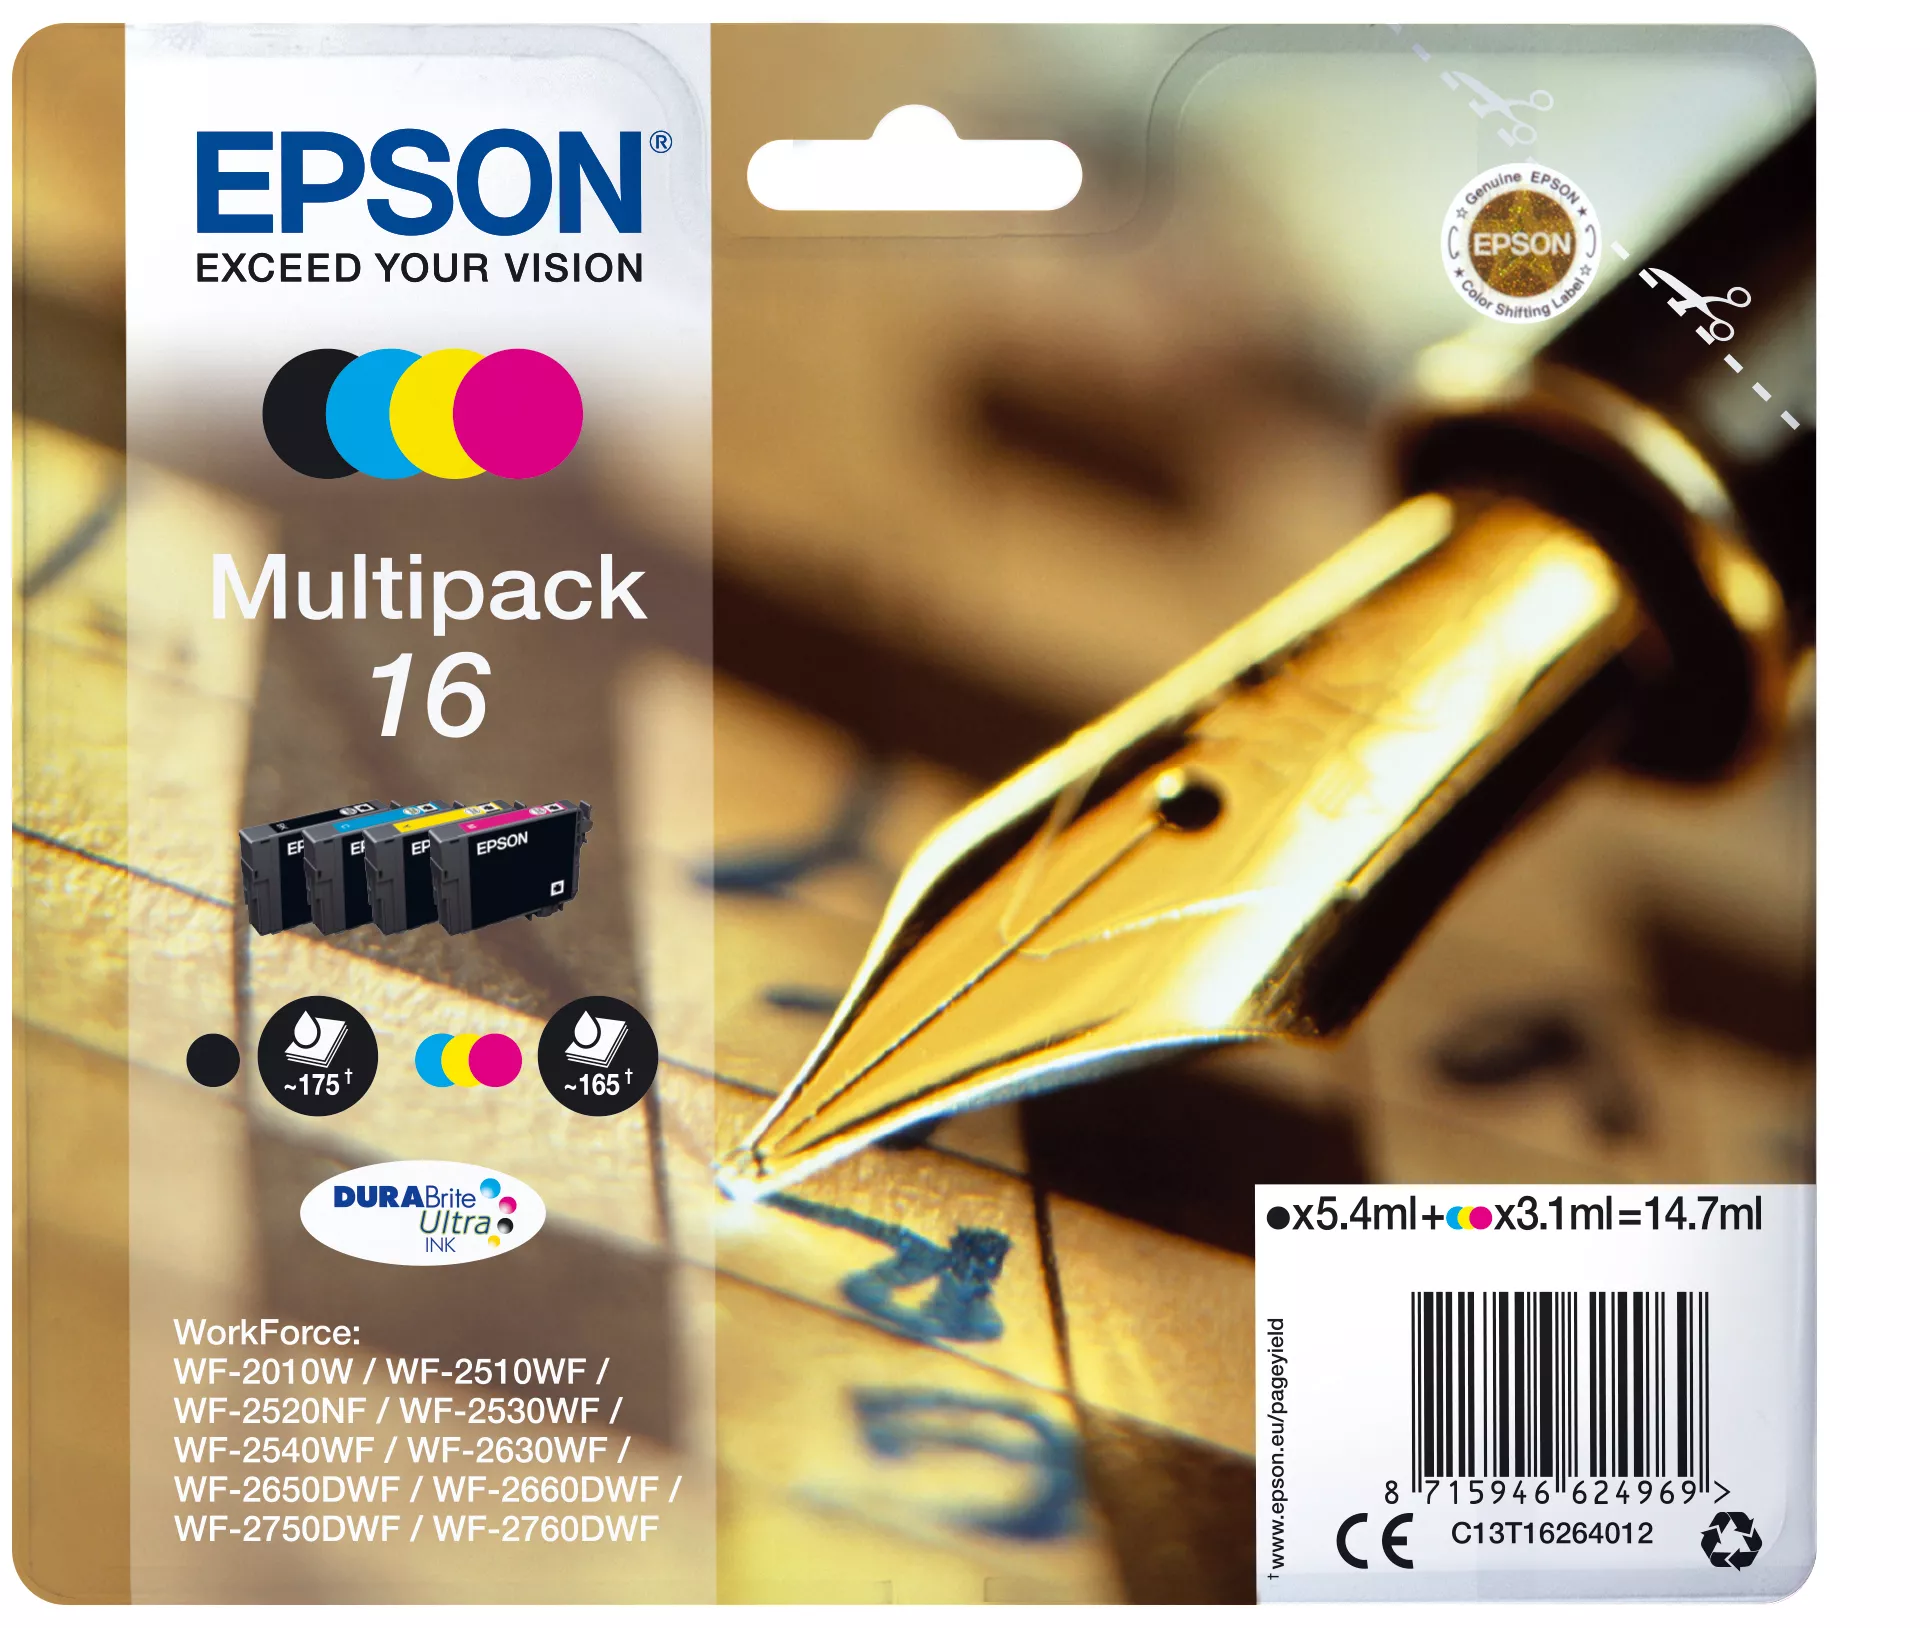 Vente EPSON 16 cartouche encre noir et tricolore capacité standard au meilleur prix